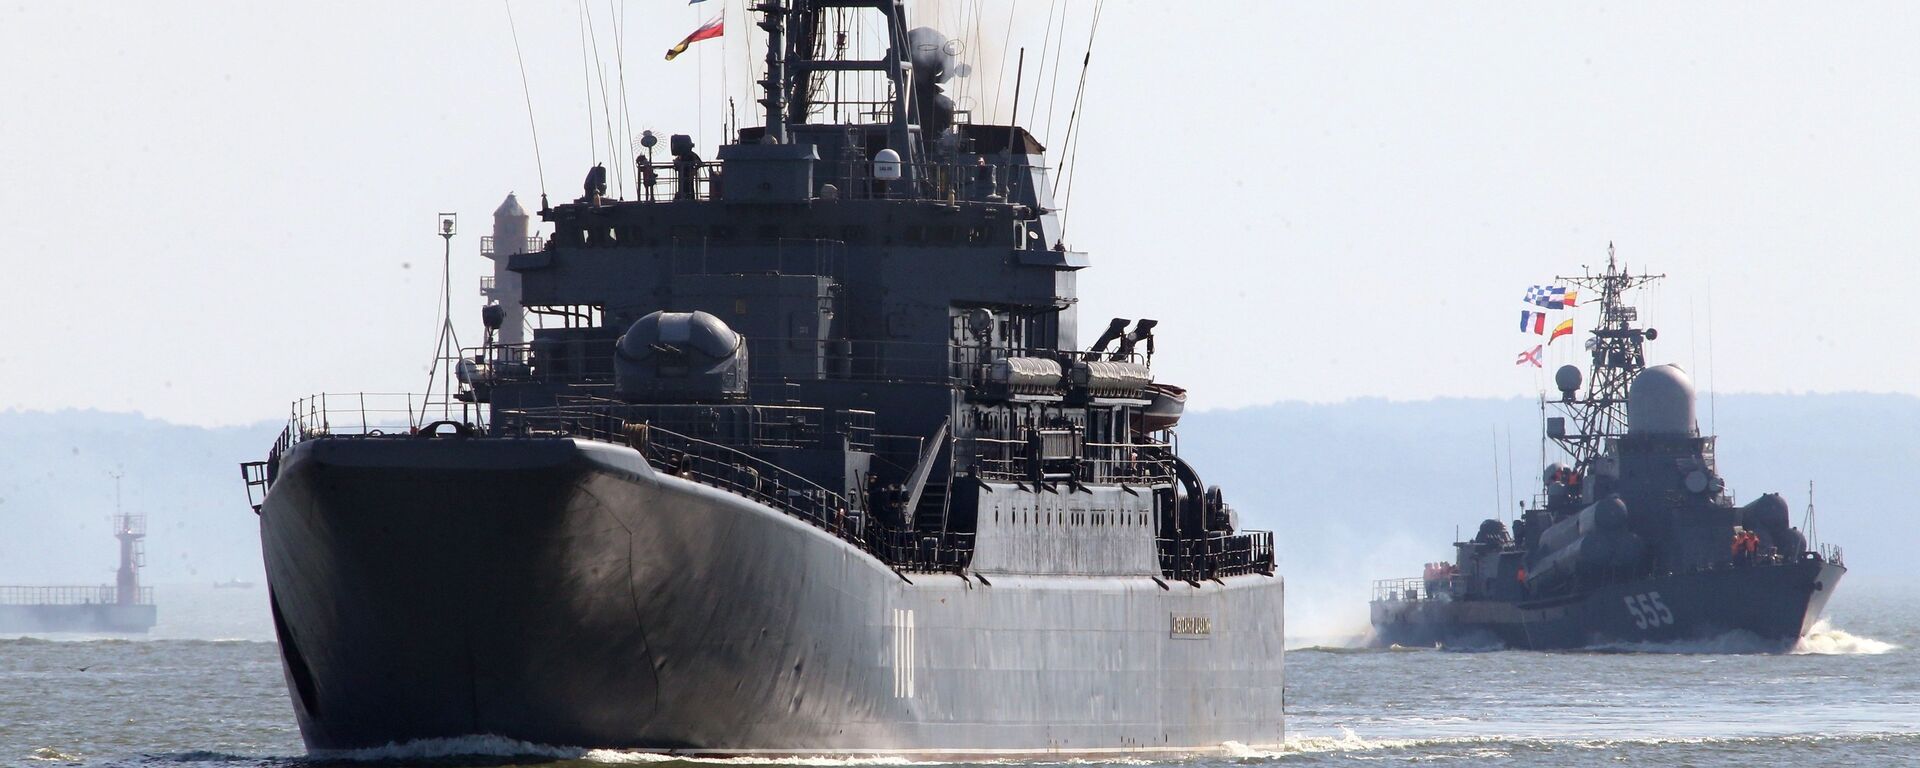 Tàu đổ bộ cỡ lớn Alexandr Shabalin (bên trái) và tàu tên lửa cỡ nhỏ Geizer cùng đội tàu của Hạm đội Baltic ra biển trong khuôn khổ cuộc tập trận chiến lược Nga-Belarus Phía Tây-2017 - Sputnik Việt Nam, 1920, 15.04.2022